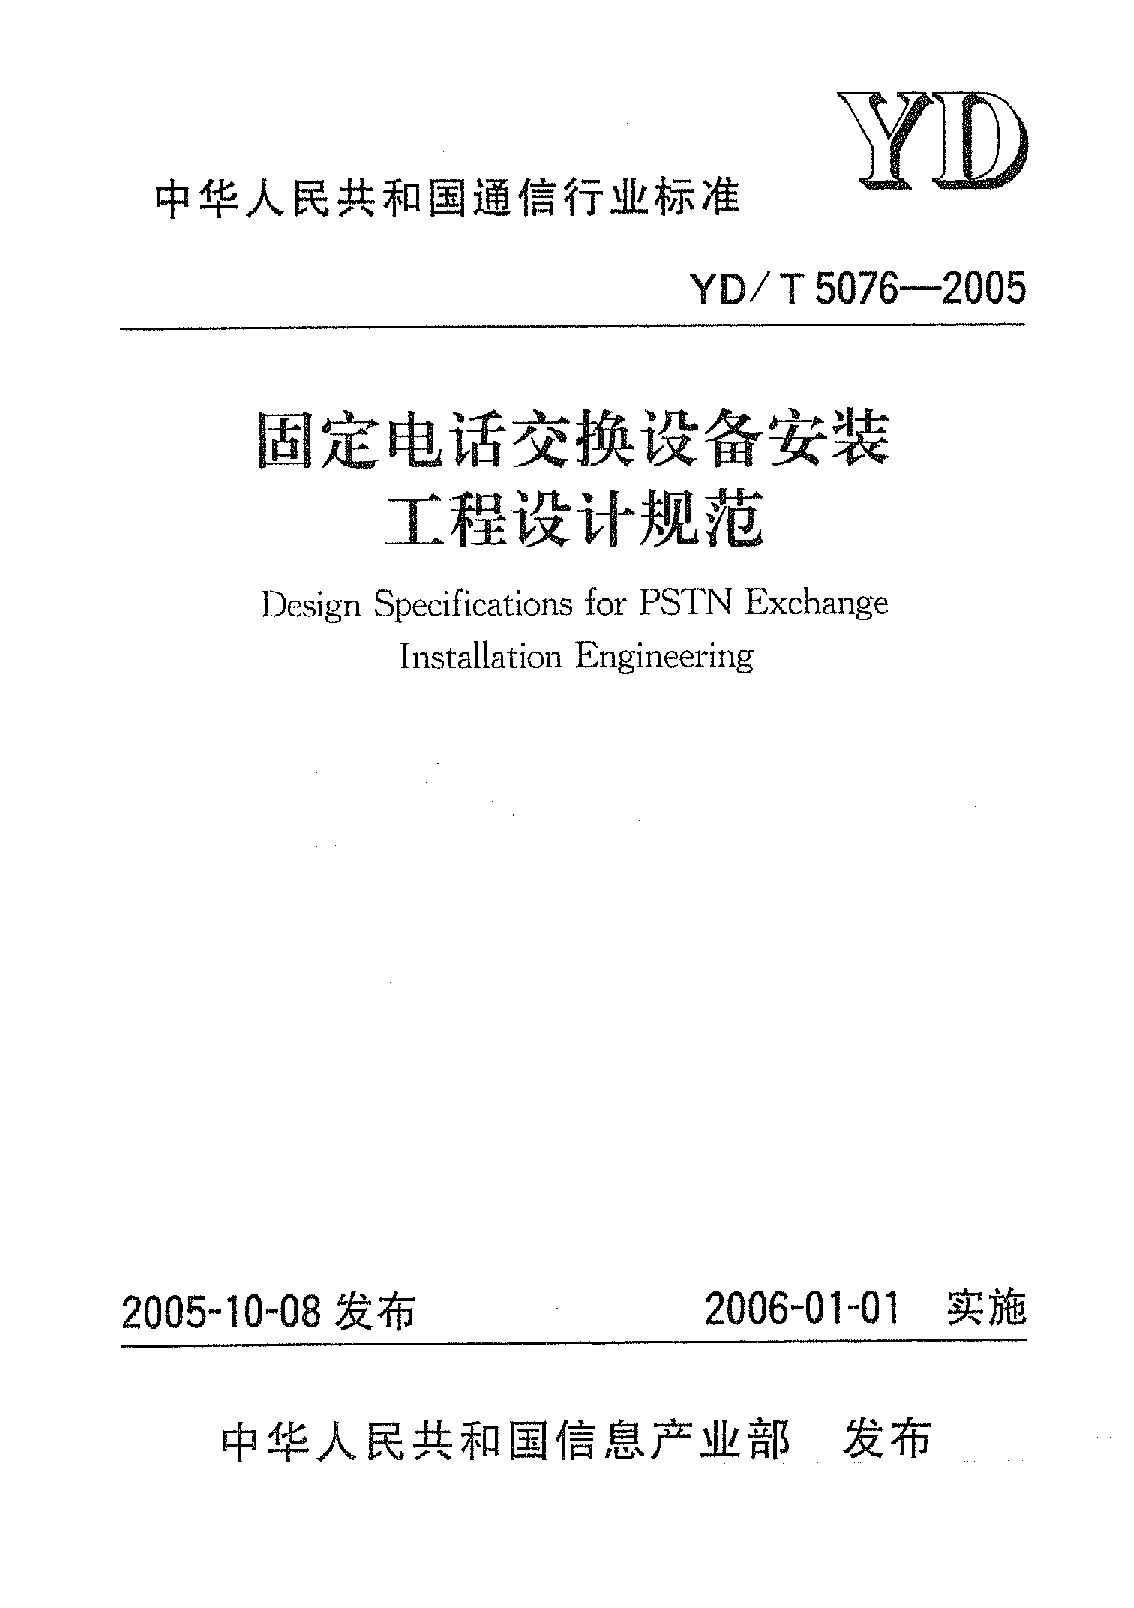 YD/T 5076-2005